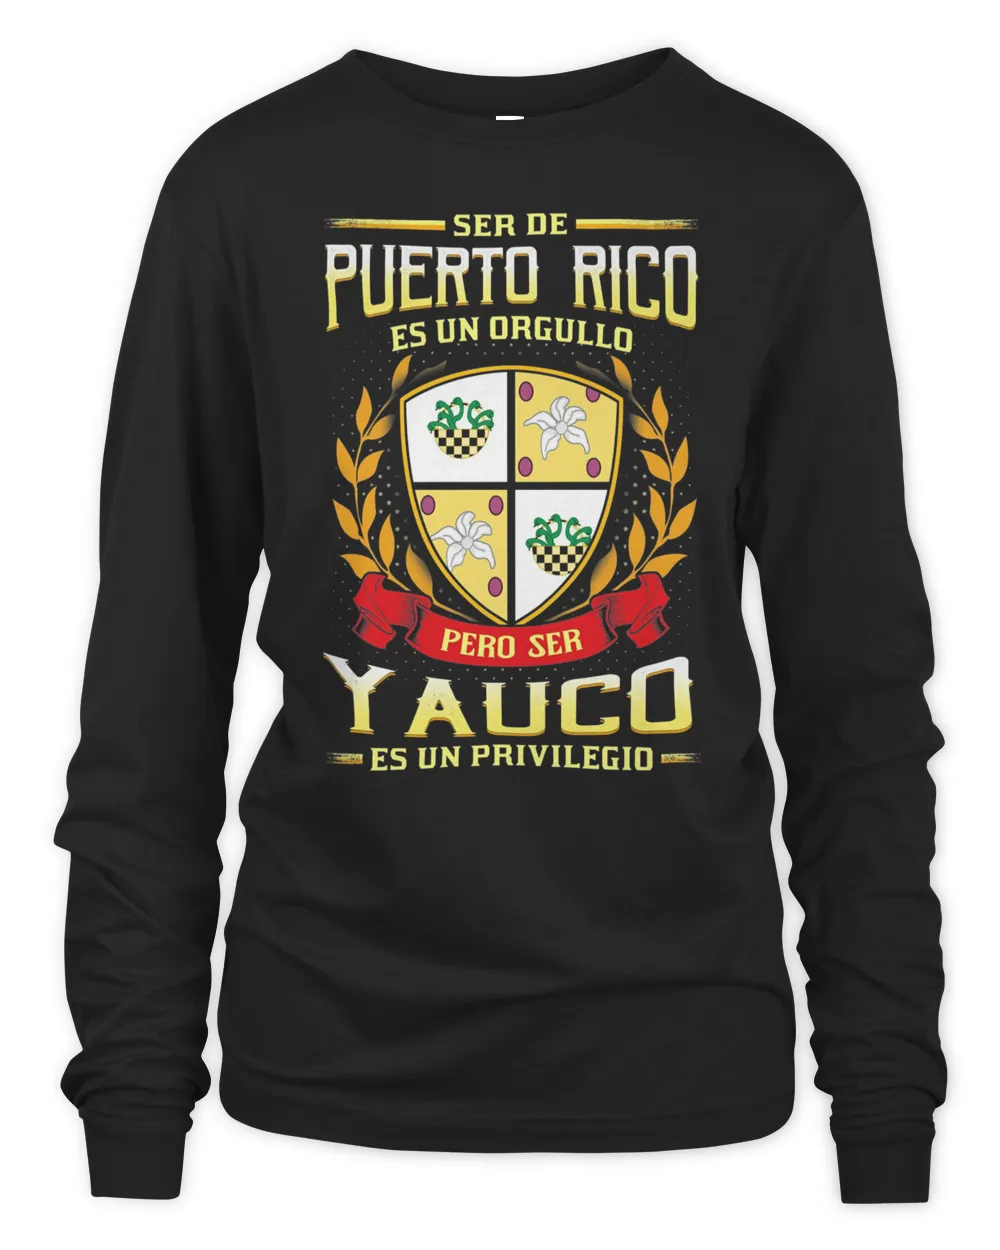 Ser De Puerto Rico Es Un Orgullo Pero Ser Yauco Es Un Privilegio Shirt